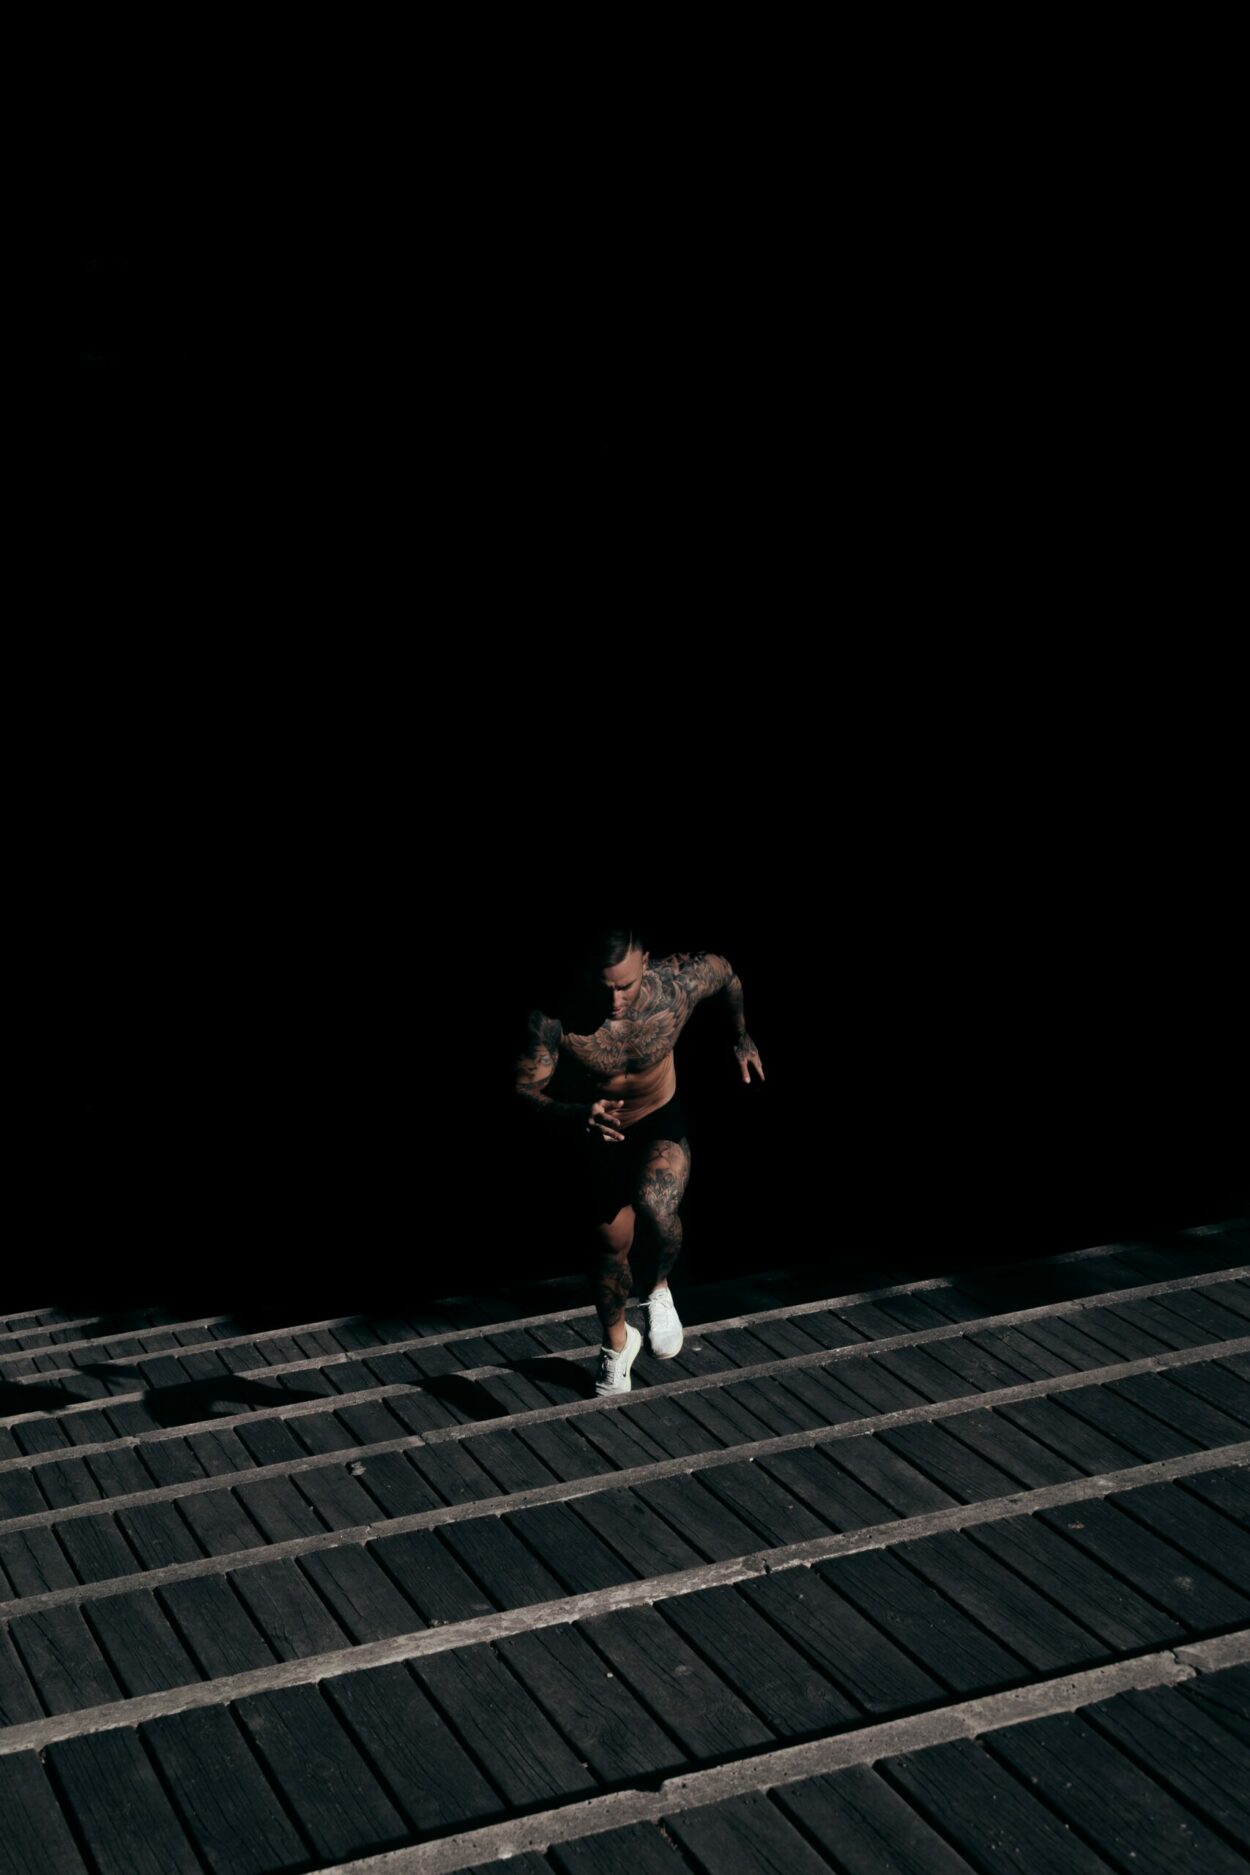 A man running